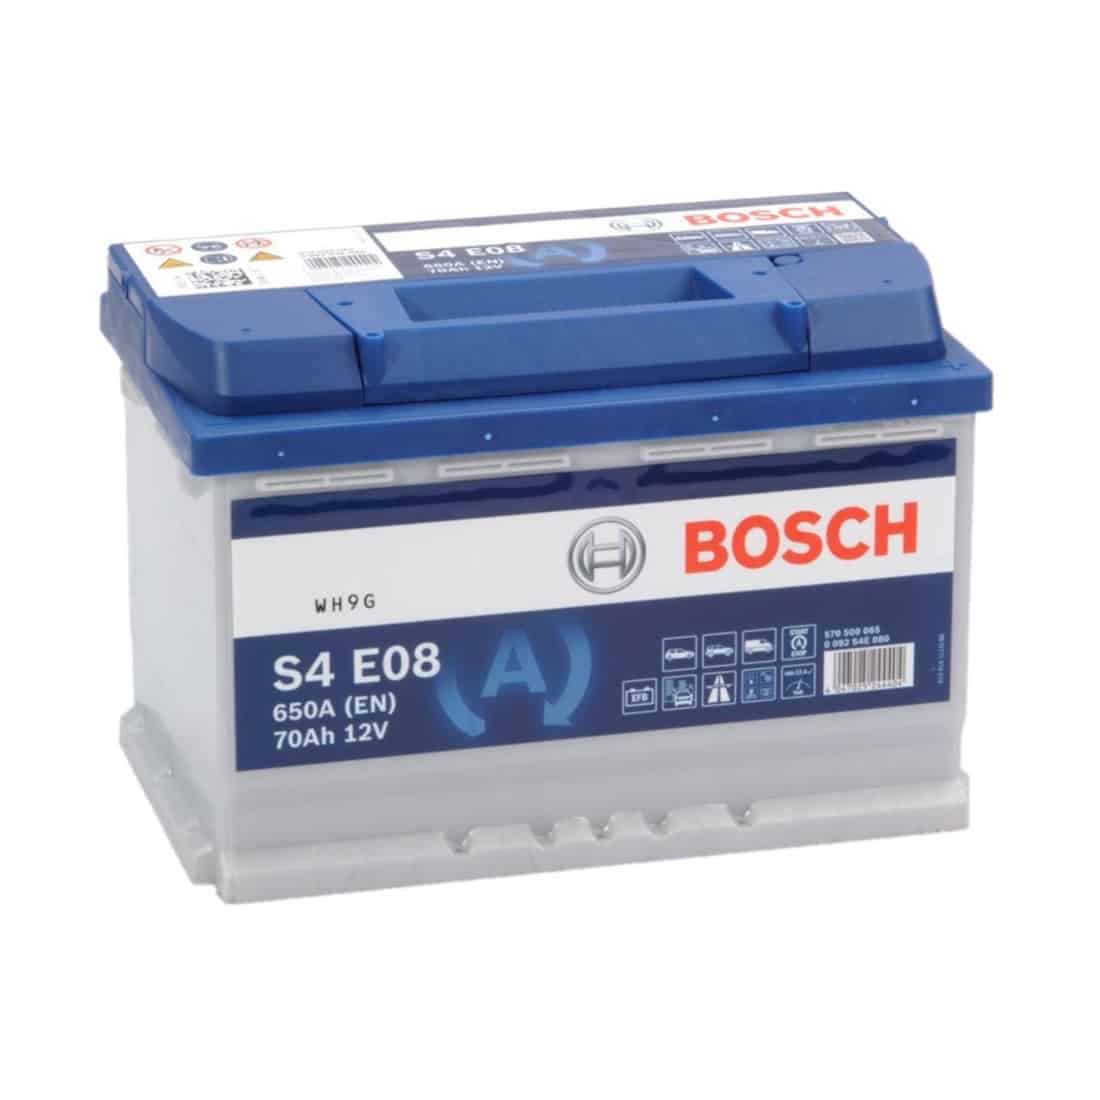 Mexico Confronteren aantal Bosch S4E08 - 70Ah accu, 760A, 12V (0 092 S4E 081) - Accudeal